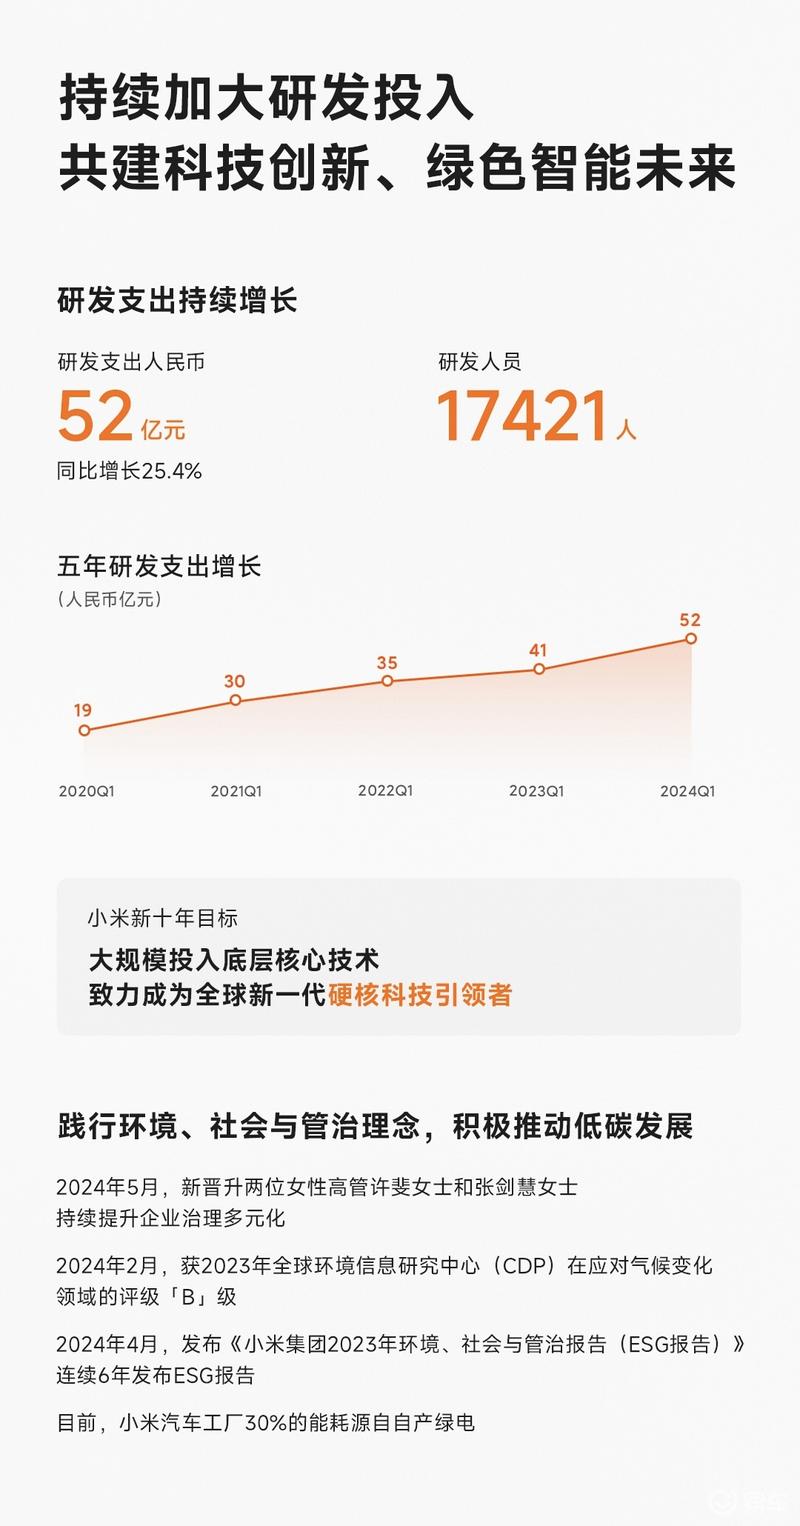 小米集团2024第一季度总营收755亿元 同比增长27.0%插图5